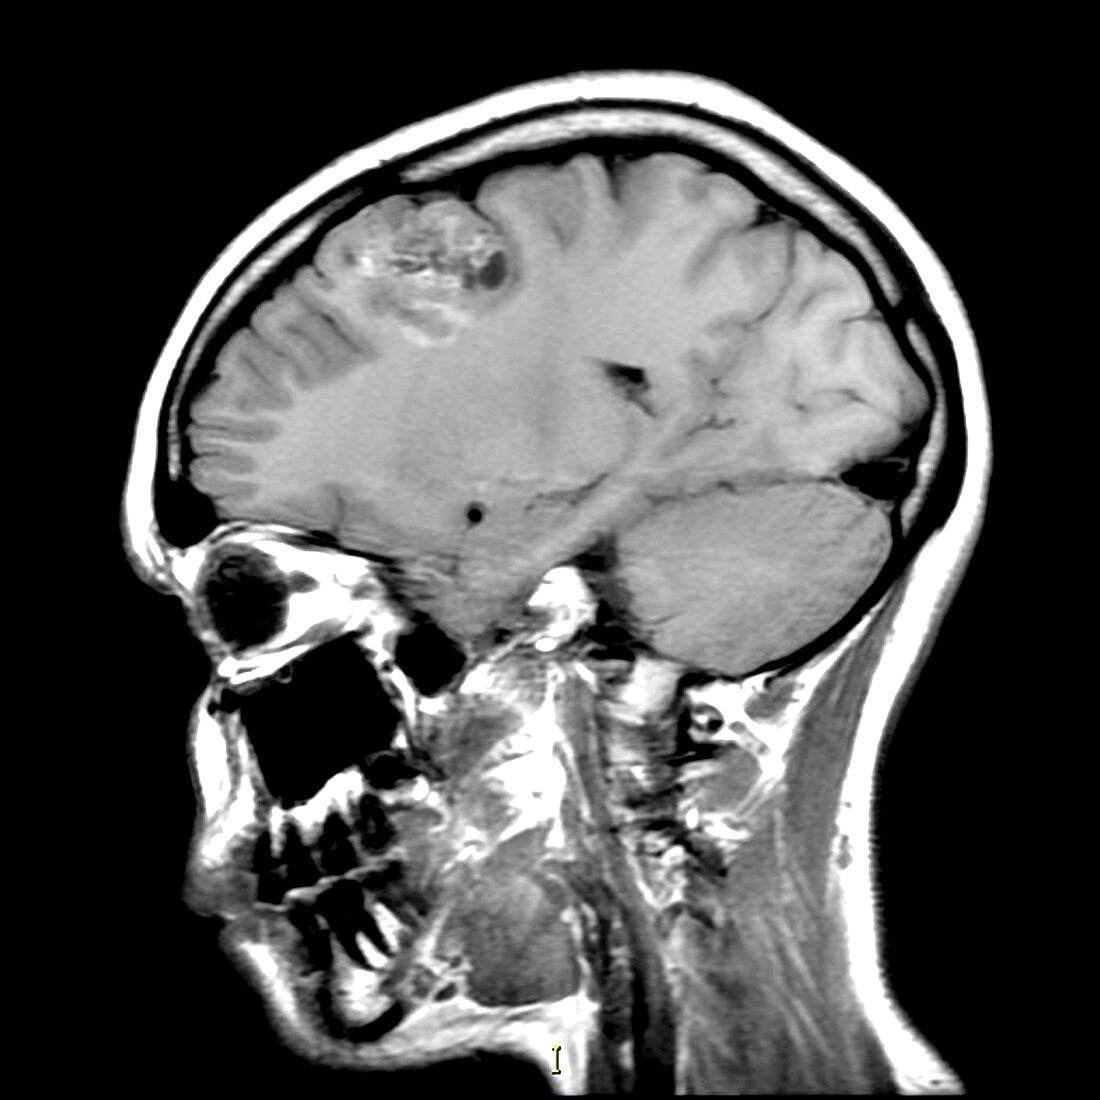 Oligodendroglioma (MRI)